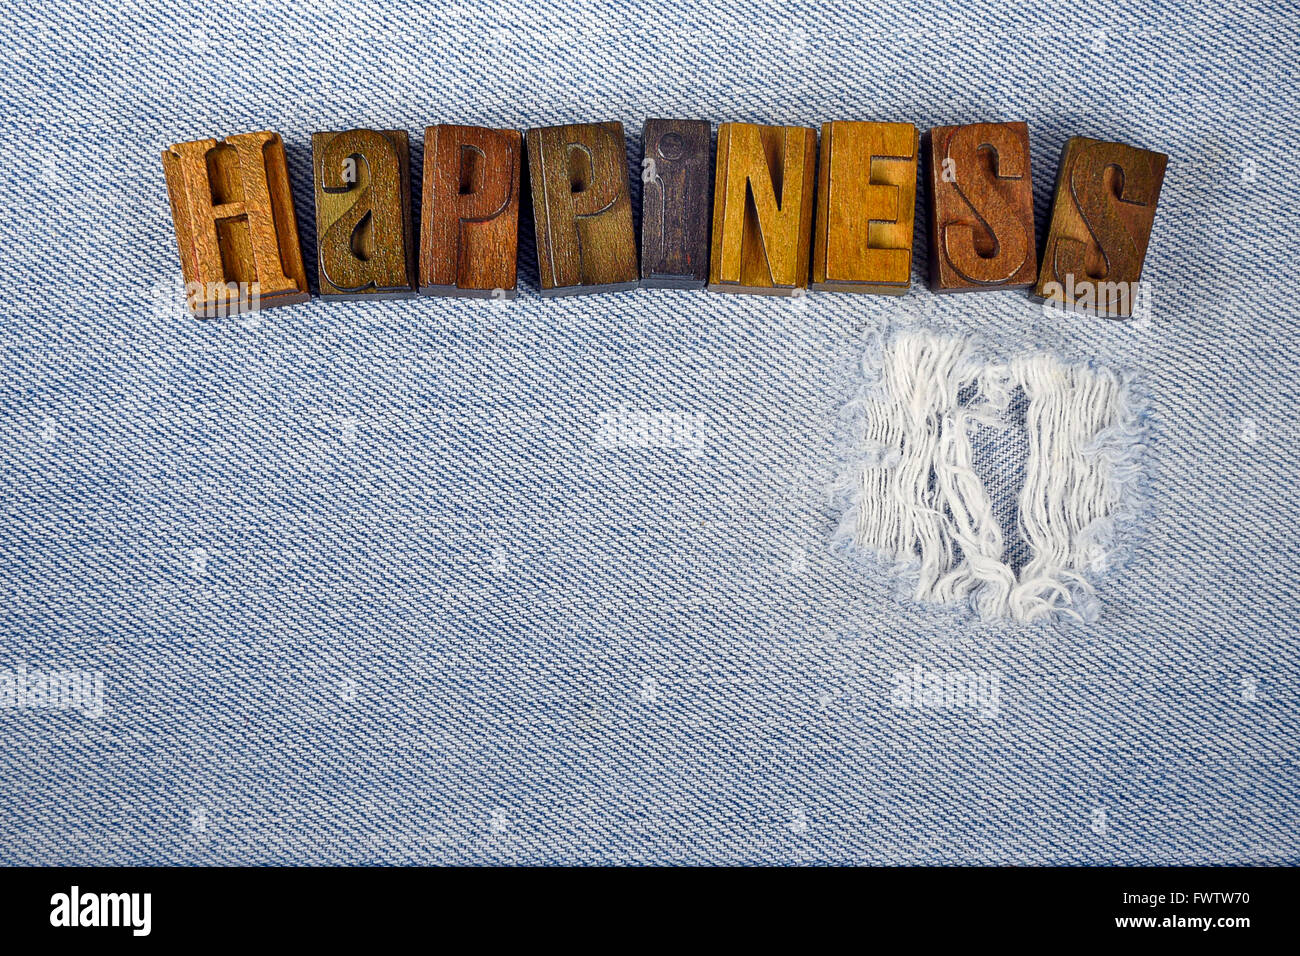 Palabra felicidad en vintage tipografía en tejido denim deshilachados. Foto de stock